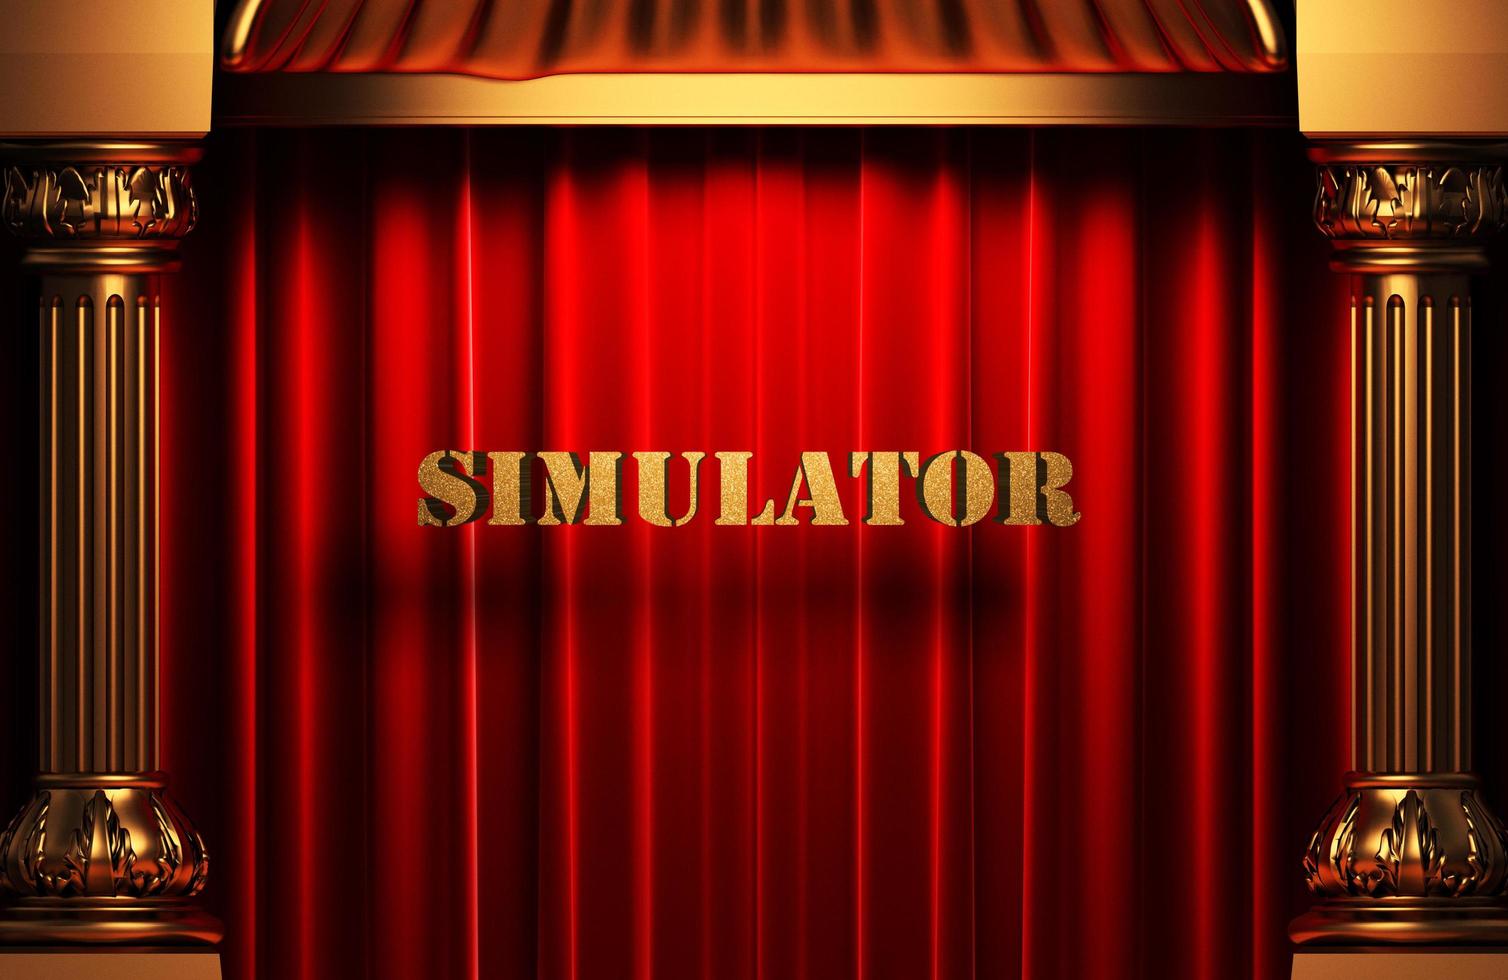 palavra dourada do simulador na cortina vermelha foto